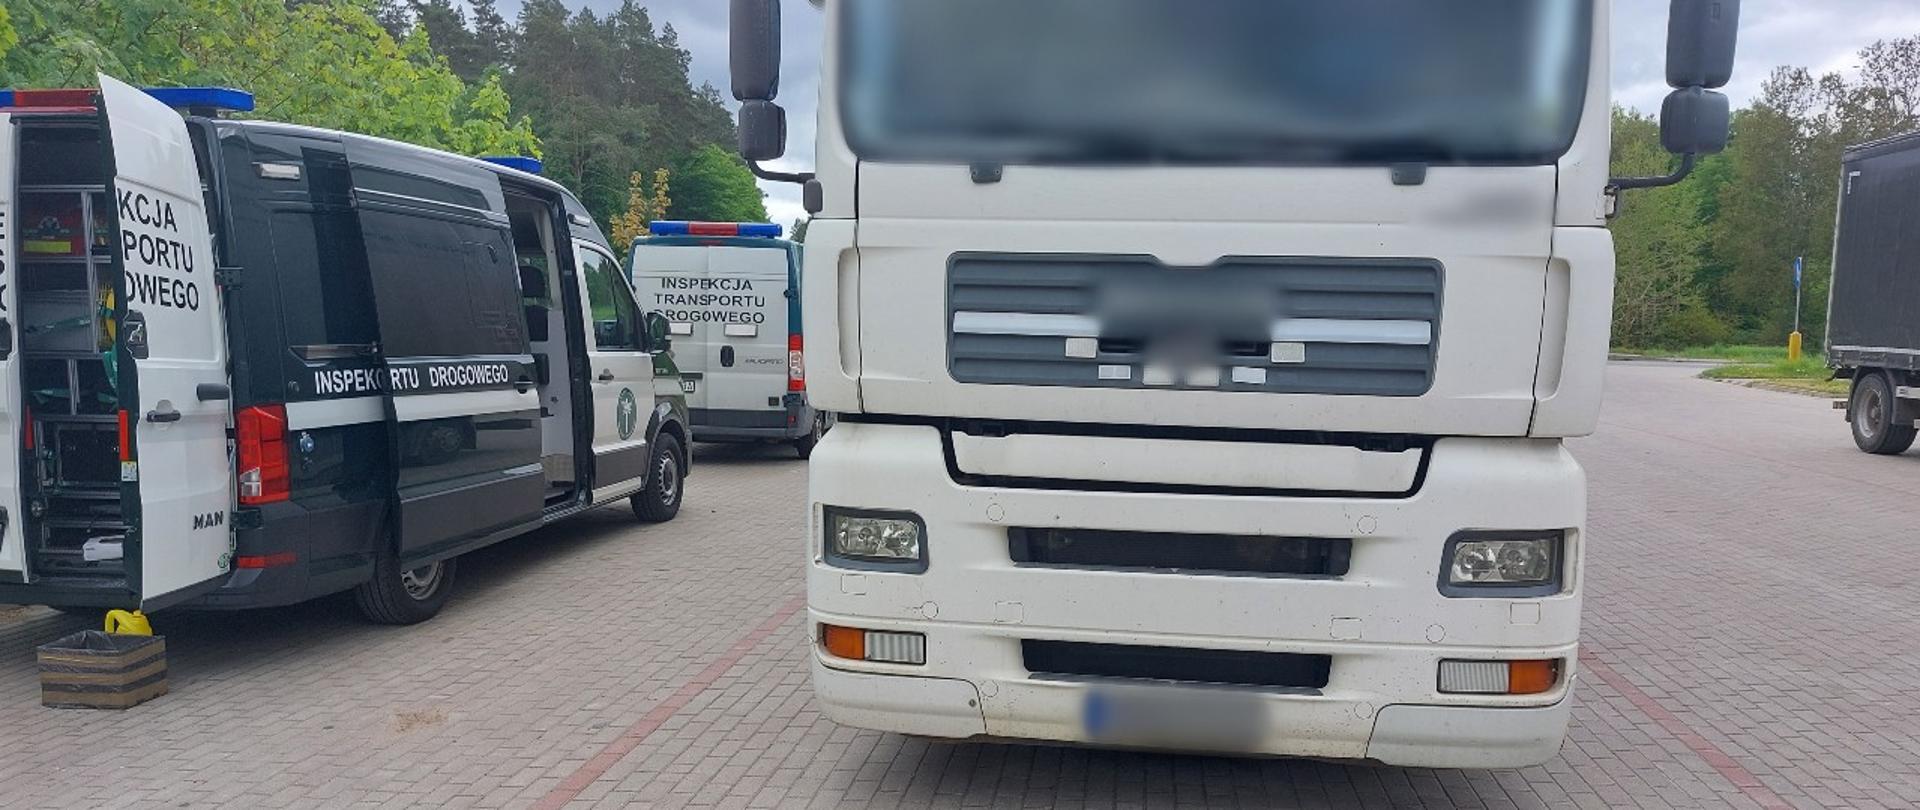 Od lewej: tył i prawy bok dwóch oznakowanych furgonów warmińsko-mazurskiej Inspekcji Transportu Drogowego. Obok stoi kontrolowany samochód ciężarowy.